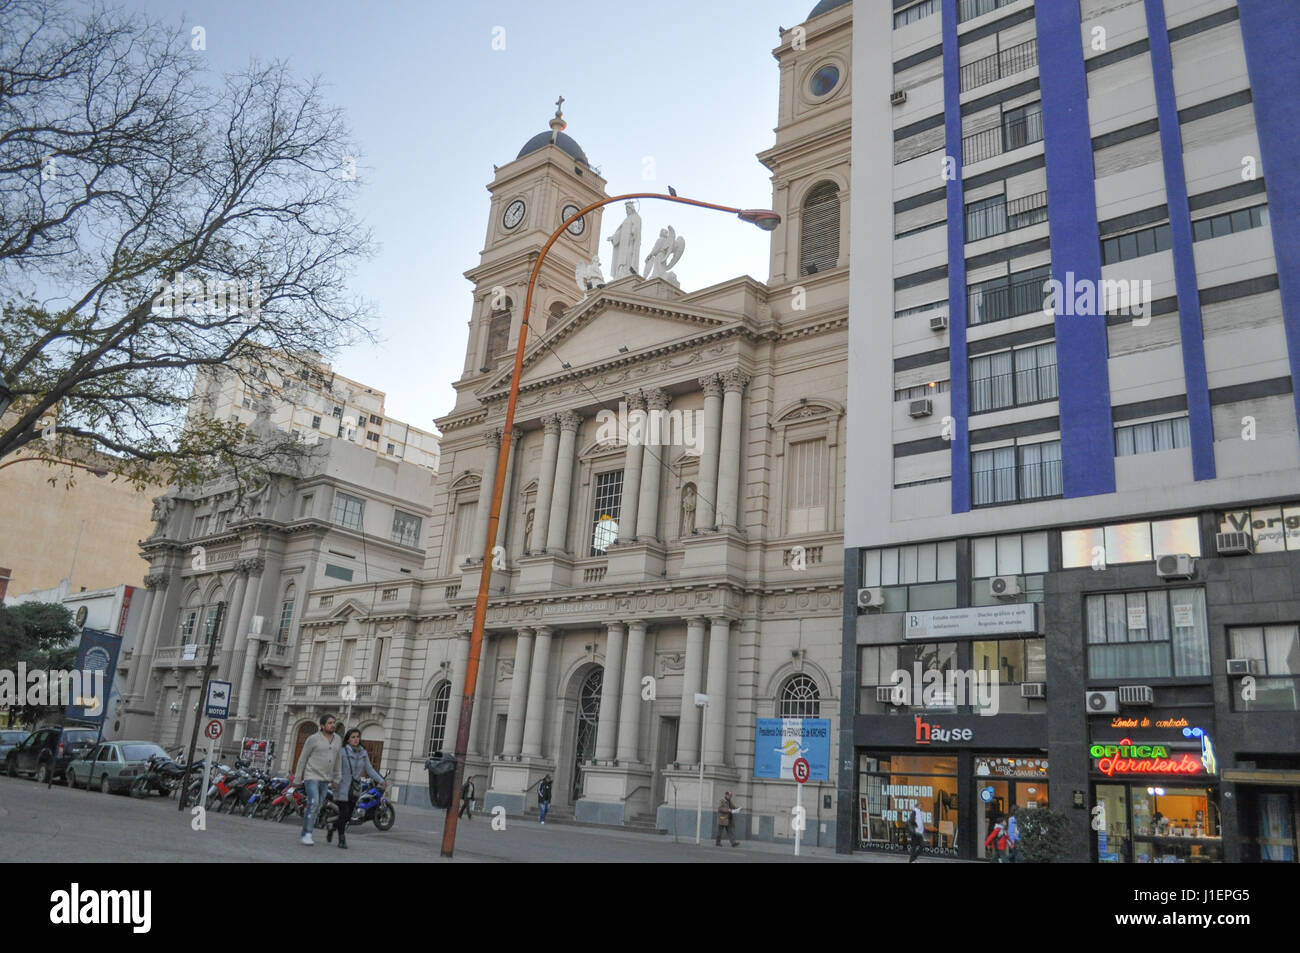 BAHIA BLANCA, BUENOS AIRES, ARGENTINA - DECEMBER 20, 2016:  Cathedral Nuestra Se–ora de la Merced in Bahia Blanca, Buenos Aires, Argentina on December Stock Photo